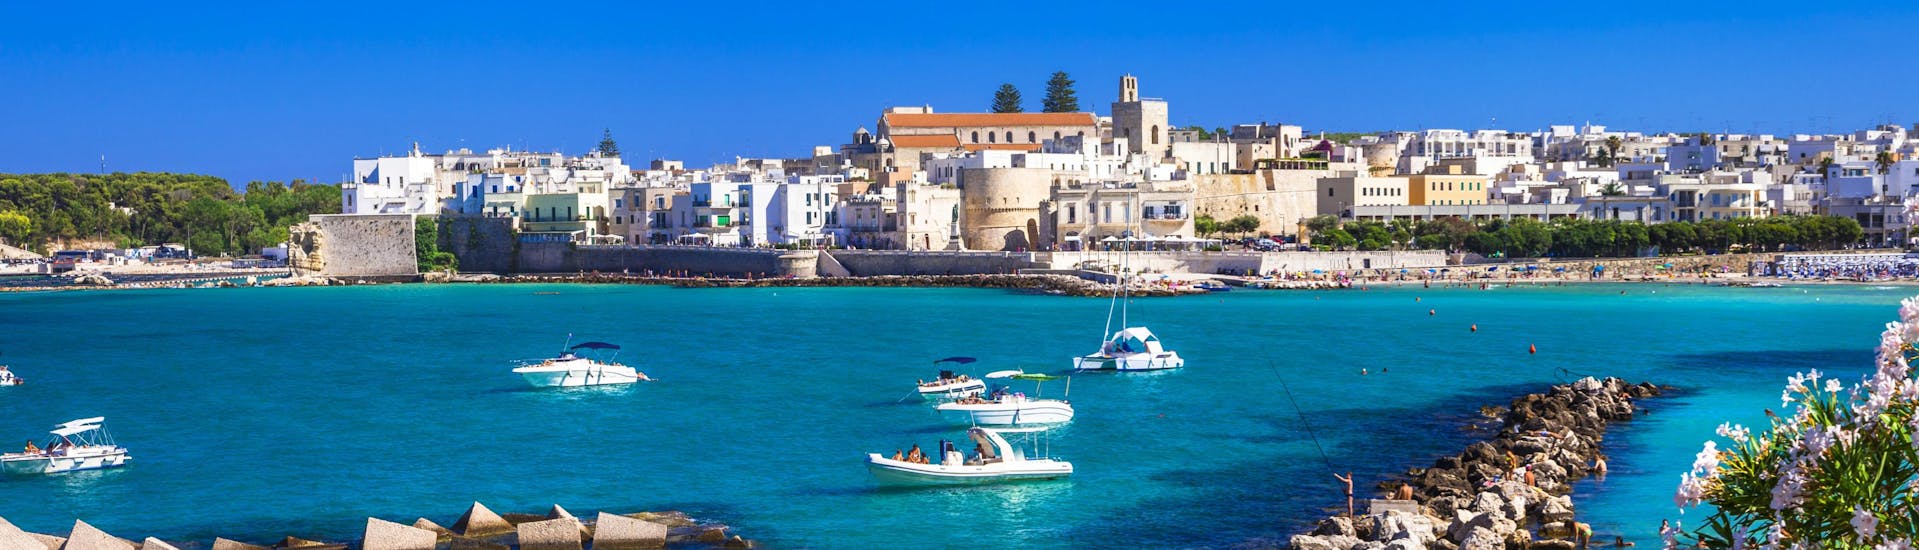 La città di Otranto vista dal mare, una vista bellissima che si può godere durante una gita in barca.